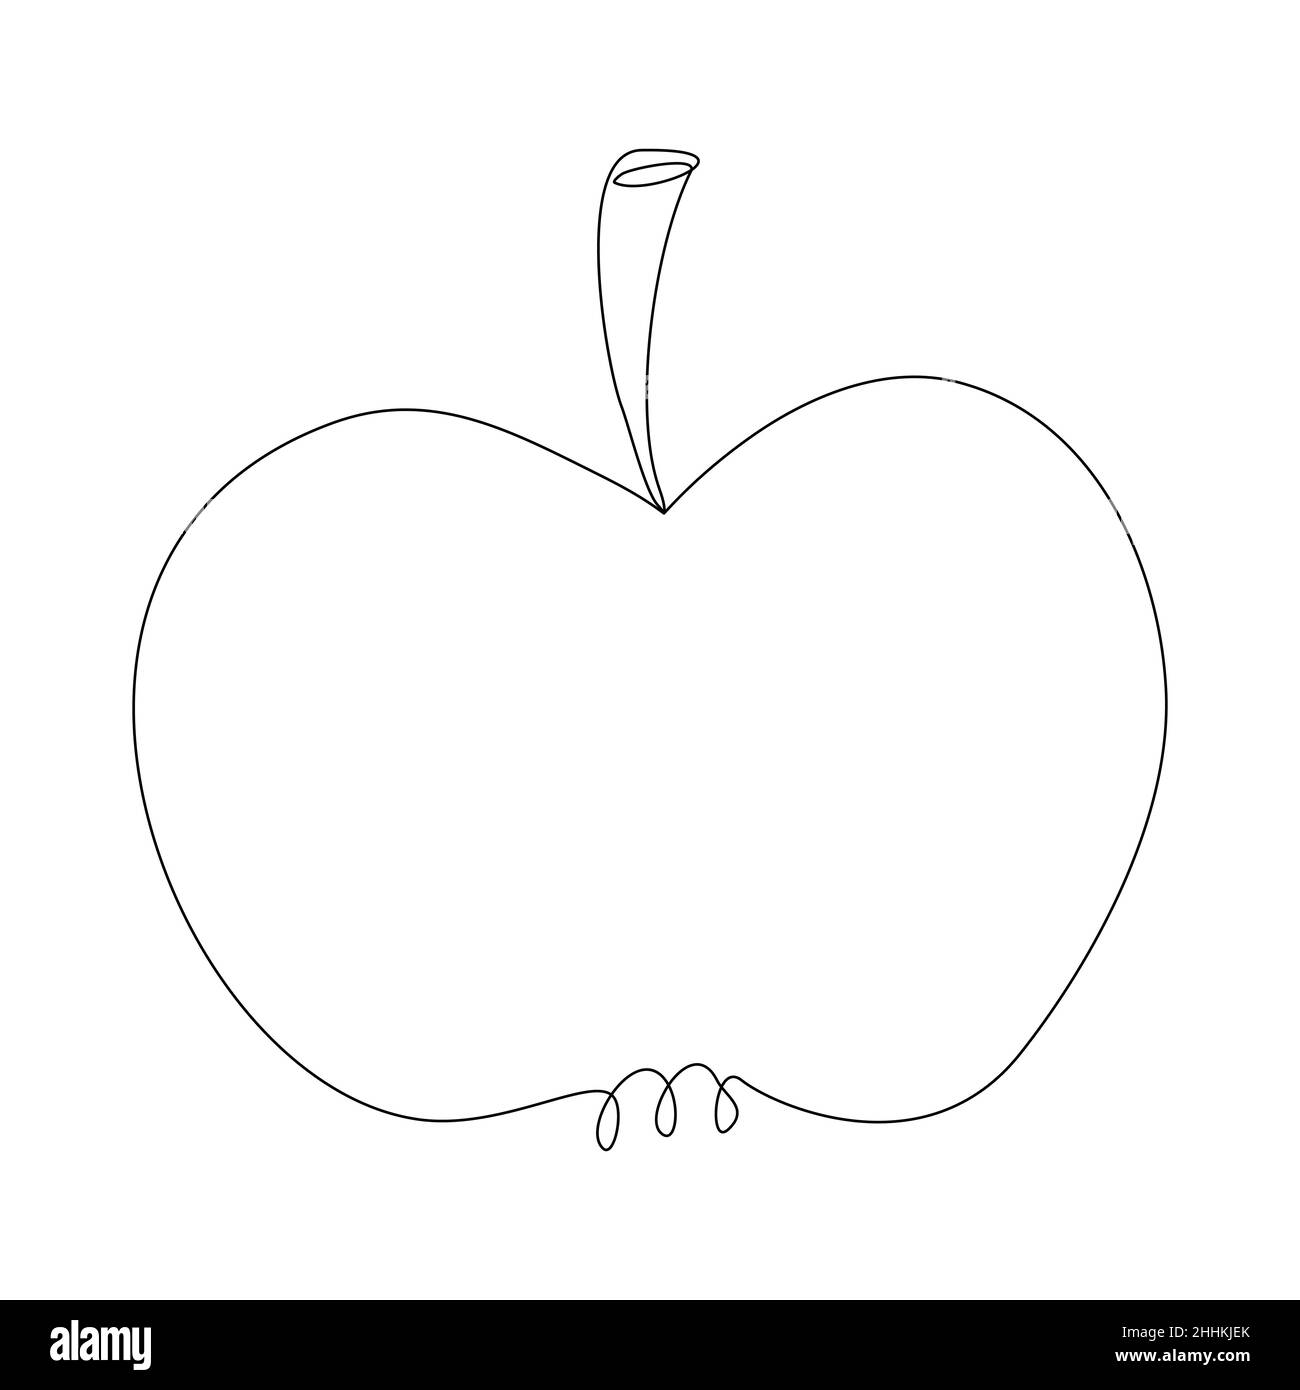 Silhouette de pomme dans le style des dessins au trait.Pomme entière dans un contour simple.Fruit à lignes continues vectorielles minimalistes Illustration de Vecteur